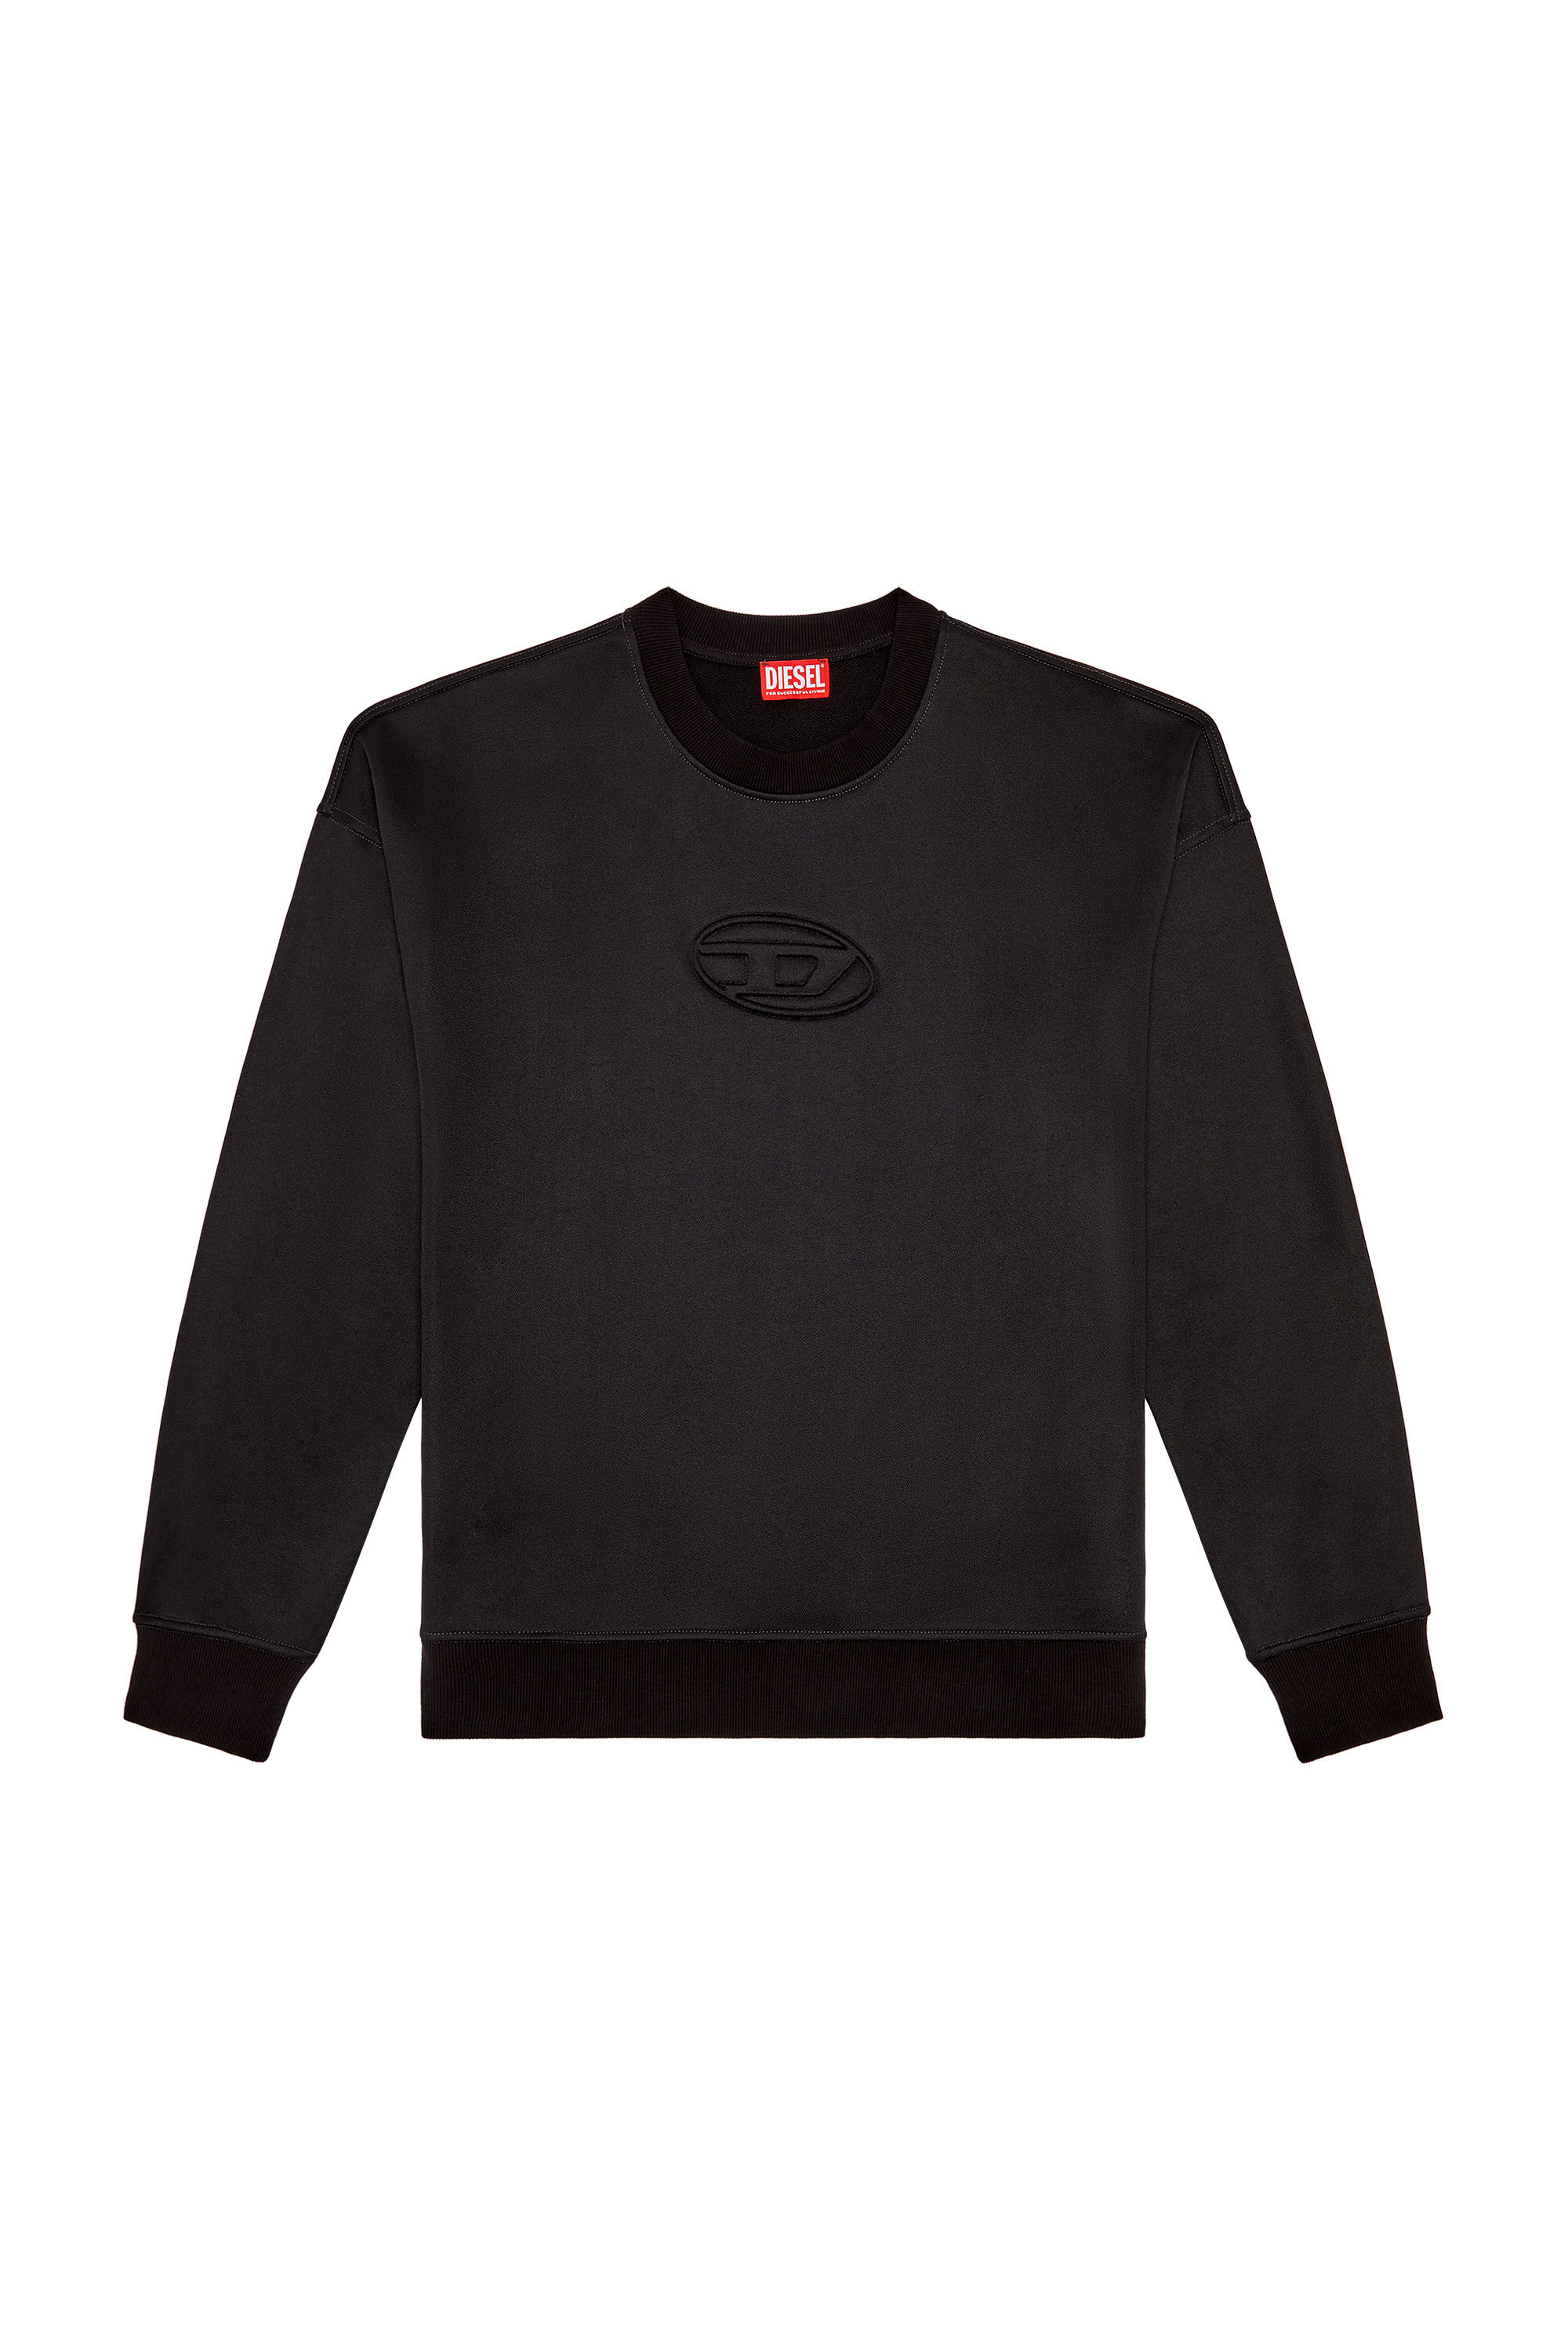 Diesel - S-ROBY-N1, Man Sweatshirt with embossed Oval D logo in Black - Image 2